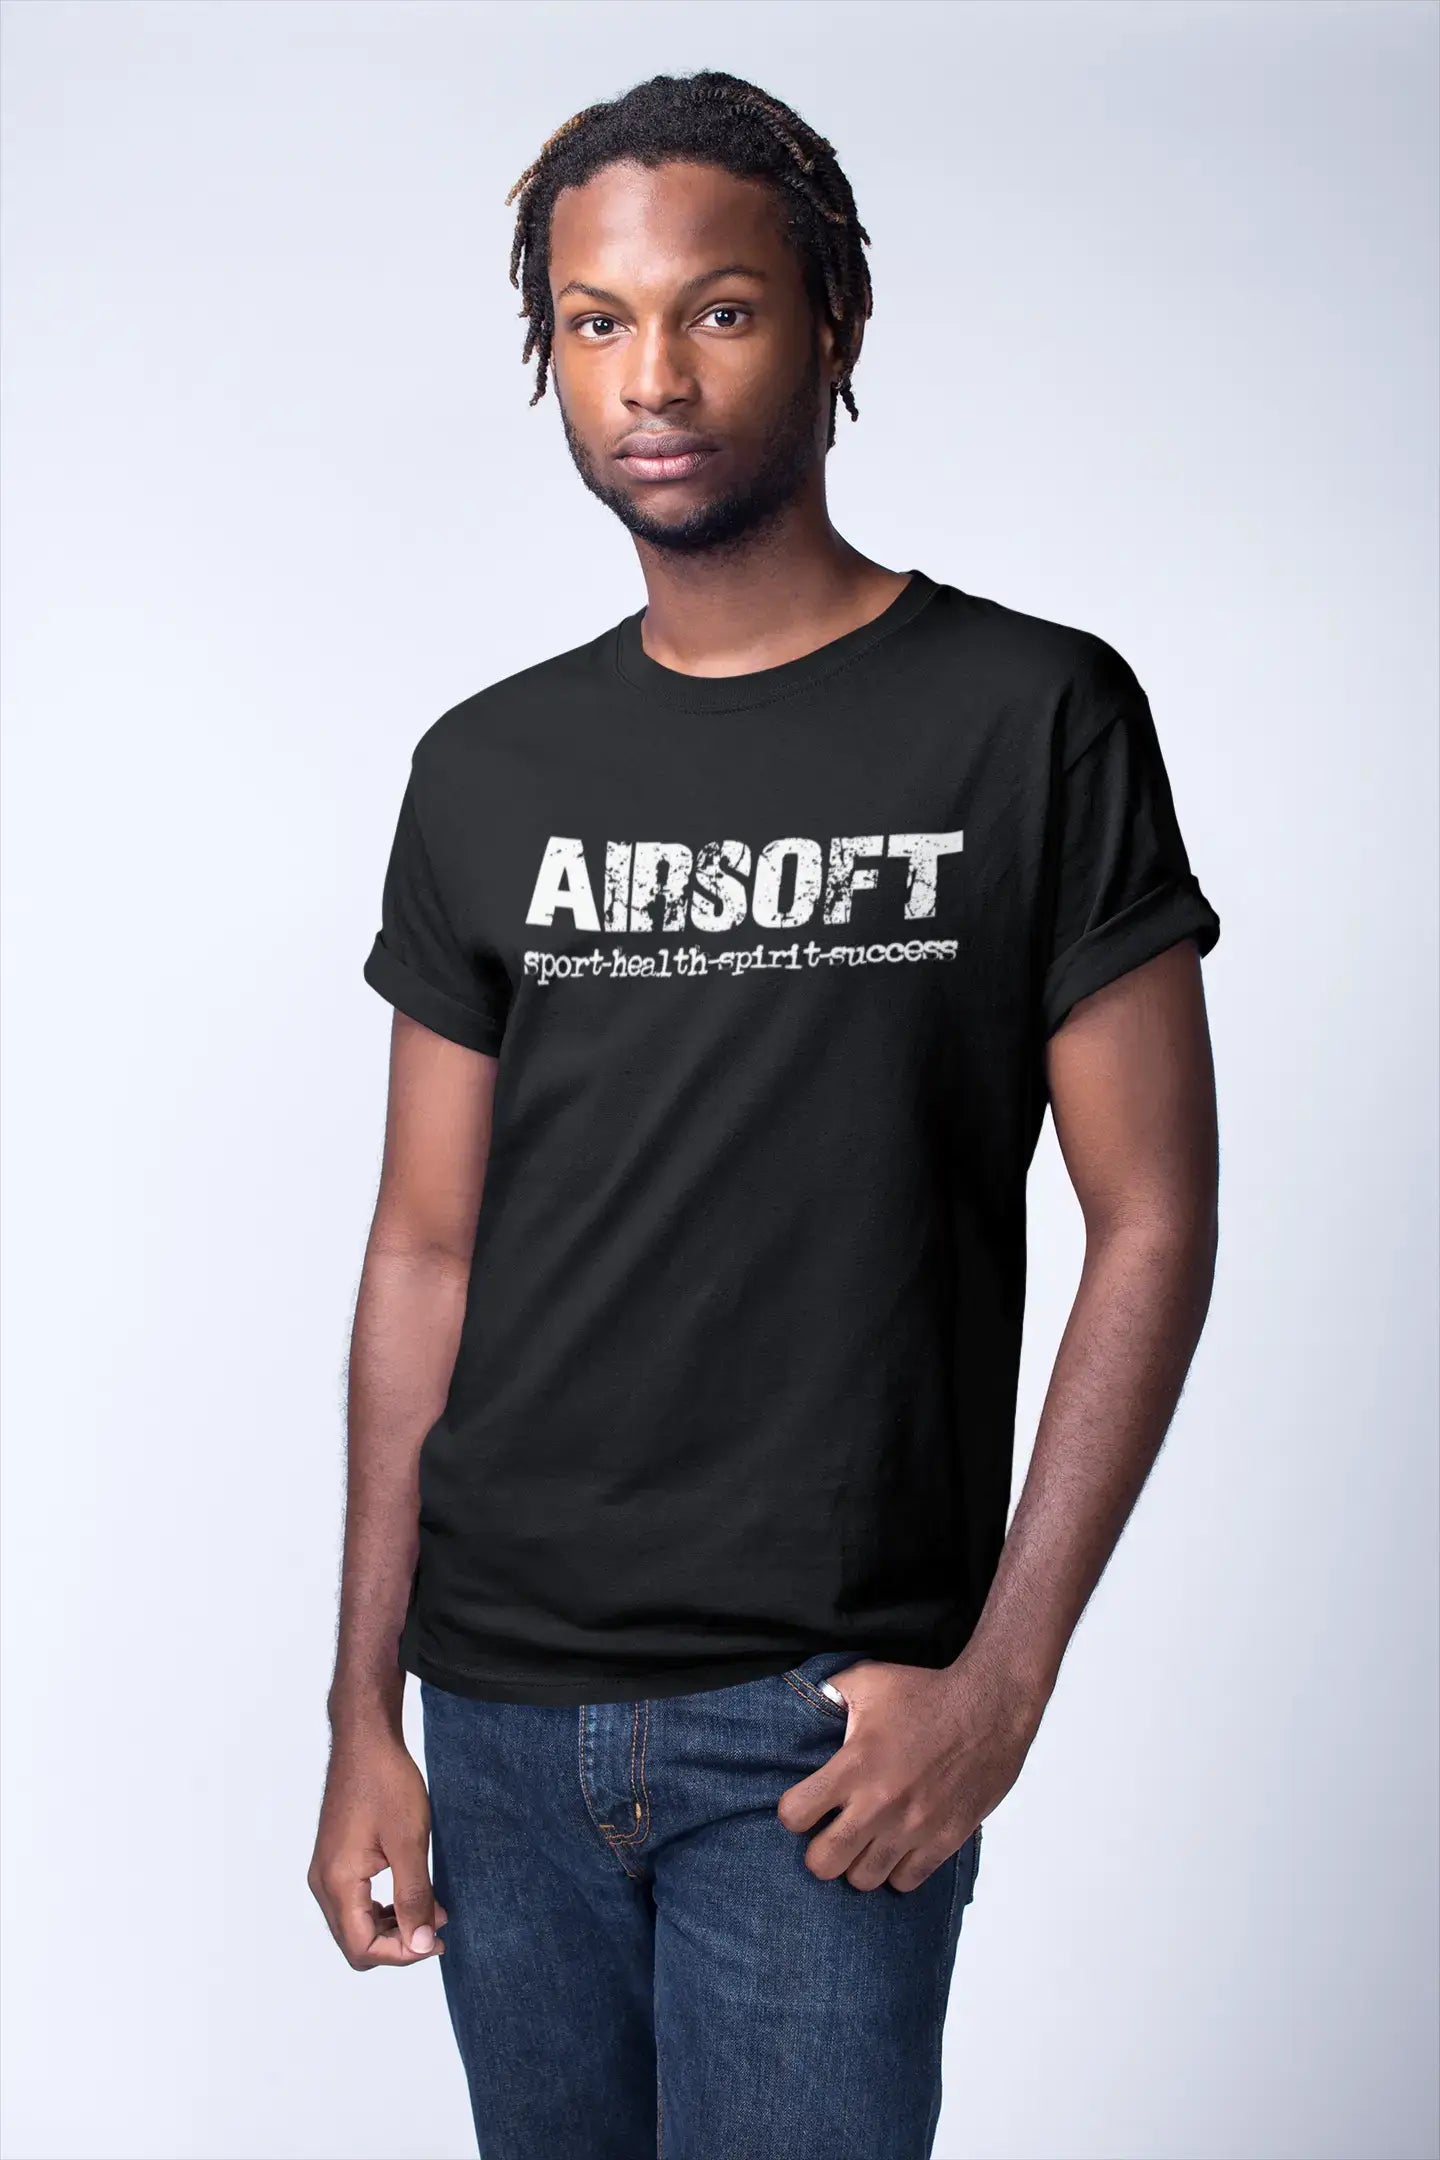 Airsoft Sport-Health-Spirit-Success Herren Kurzarm-Rundhals-T-Shirt 00079